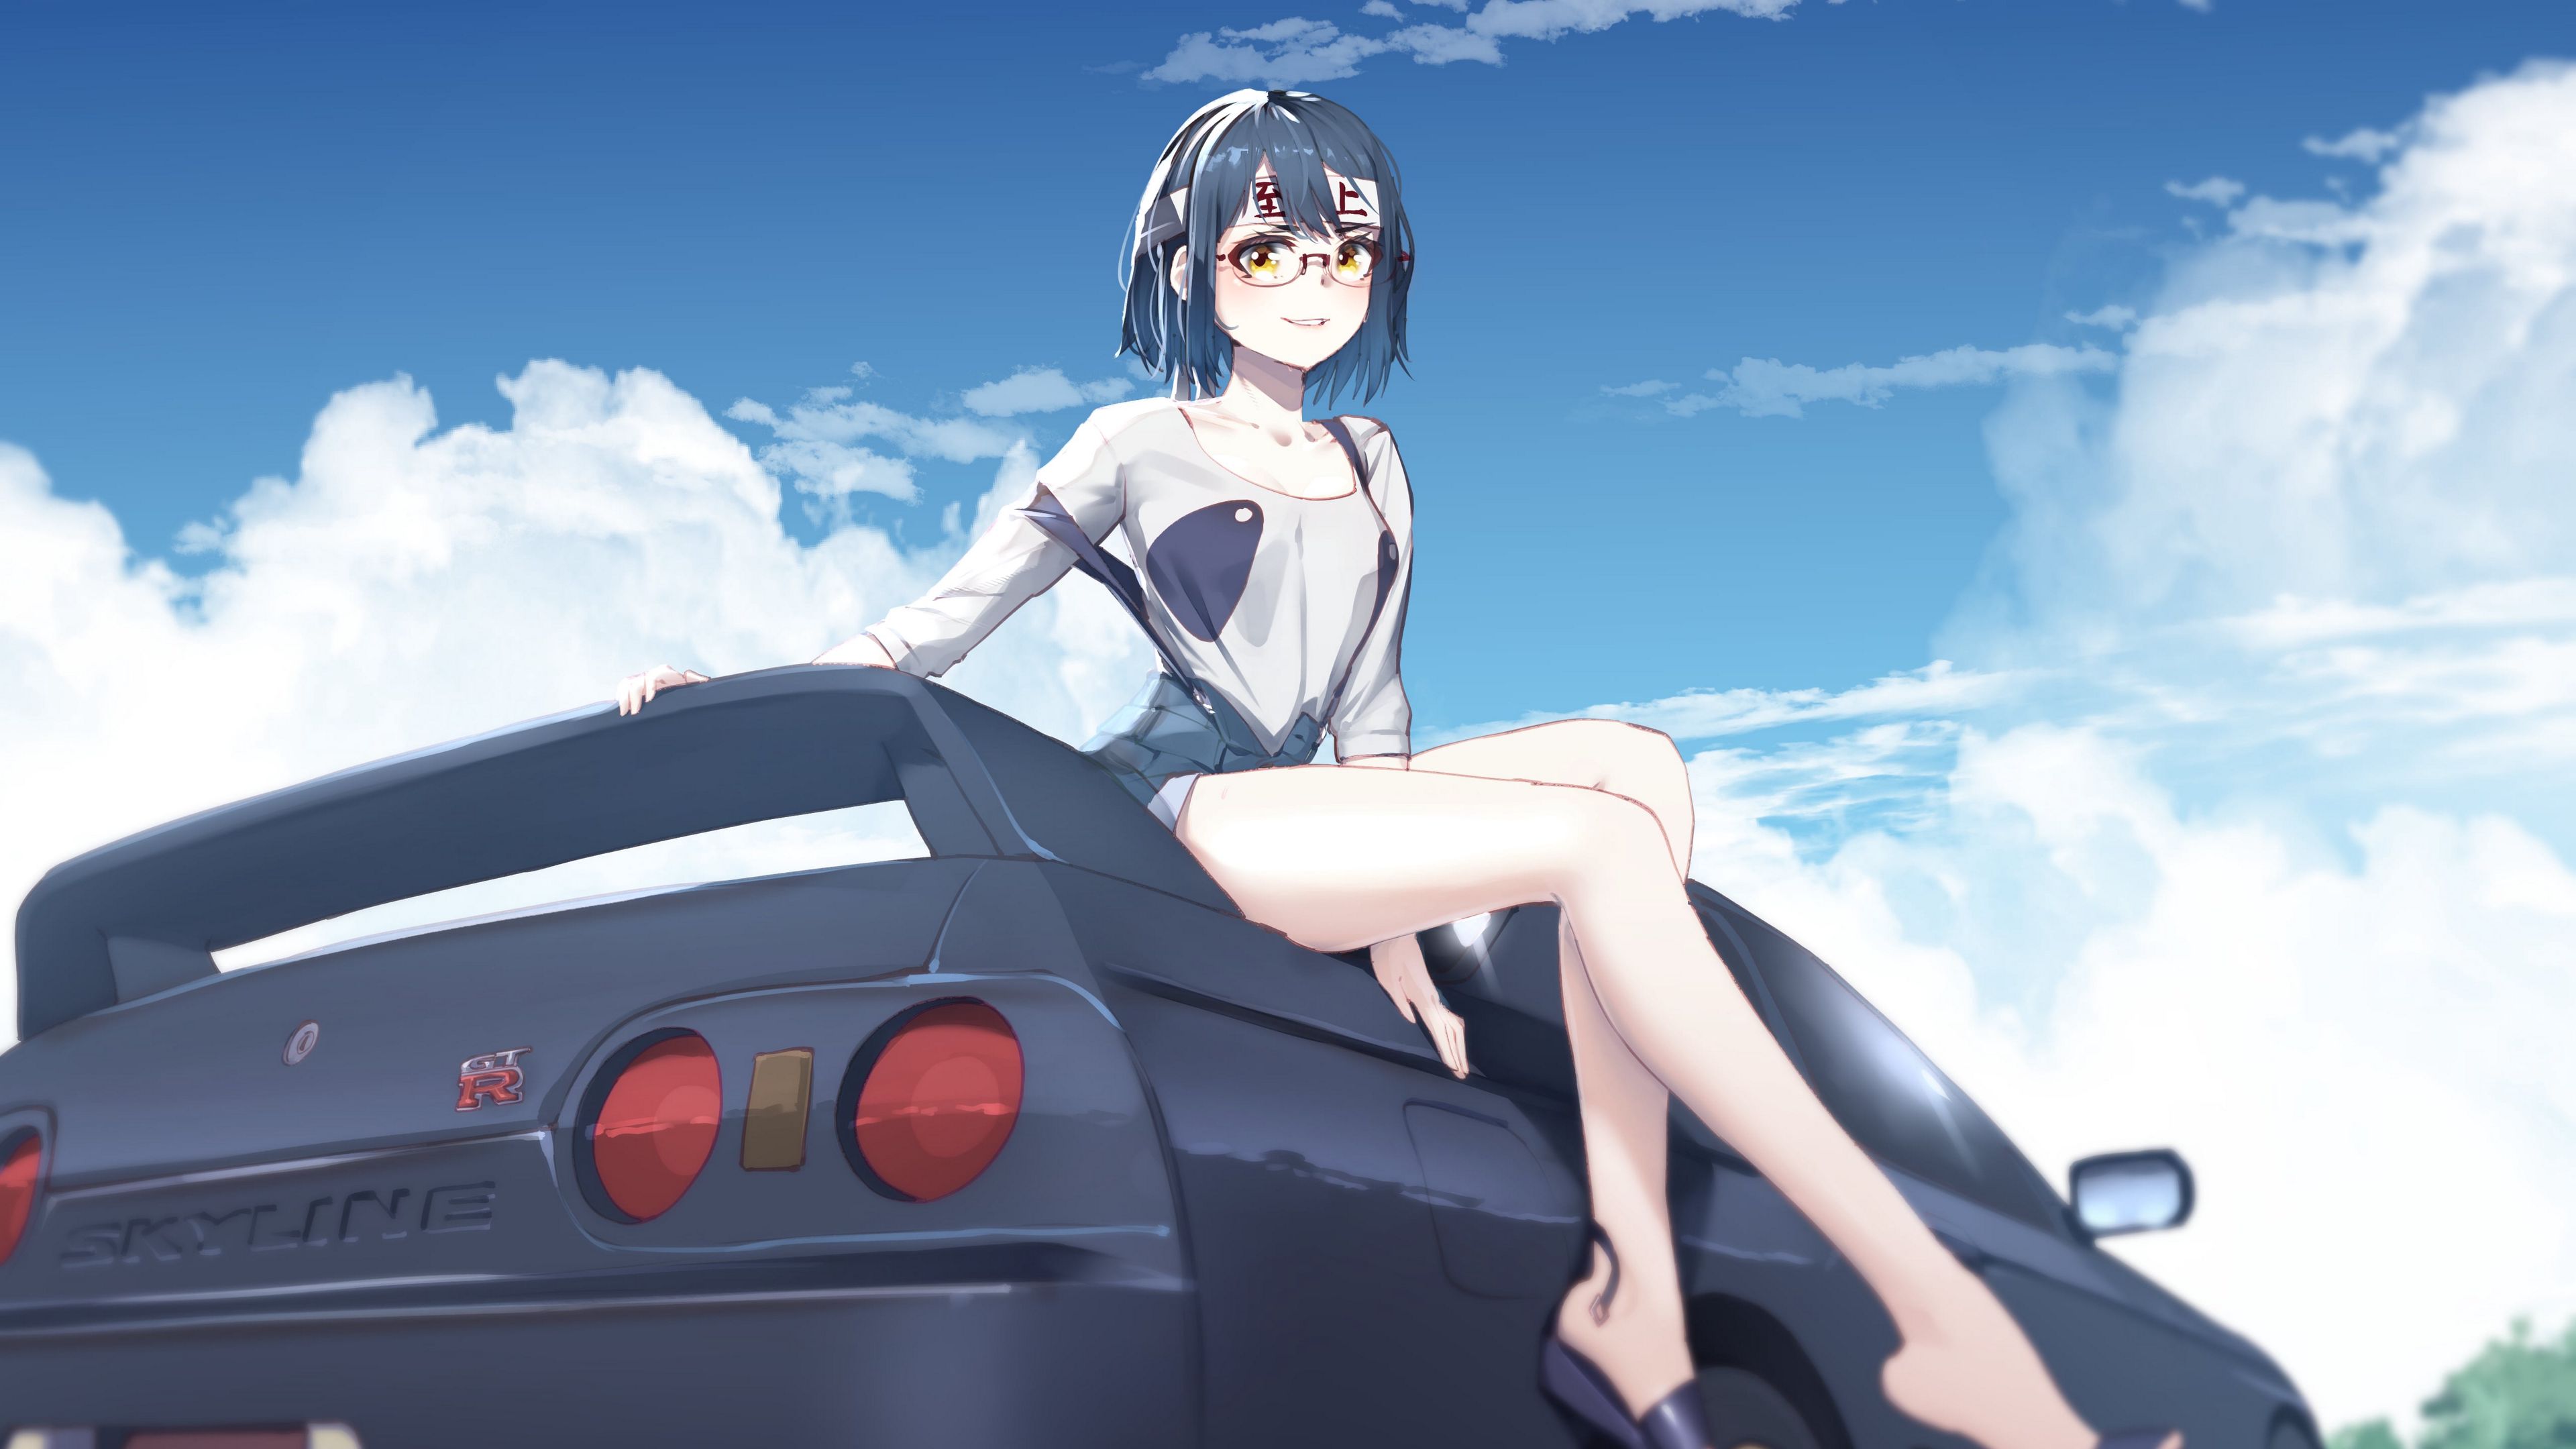 Wallpaper Girl Glasses Smile Car Anime Art